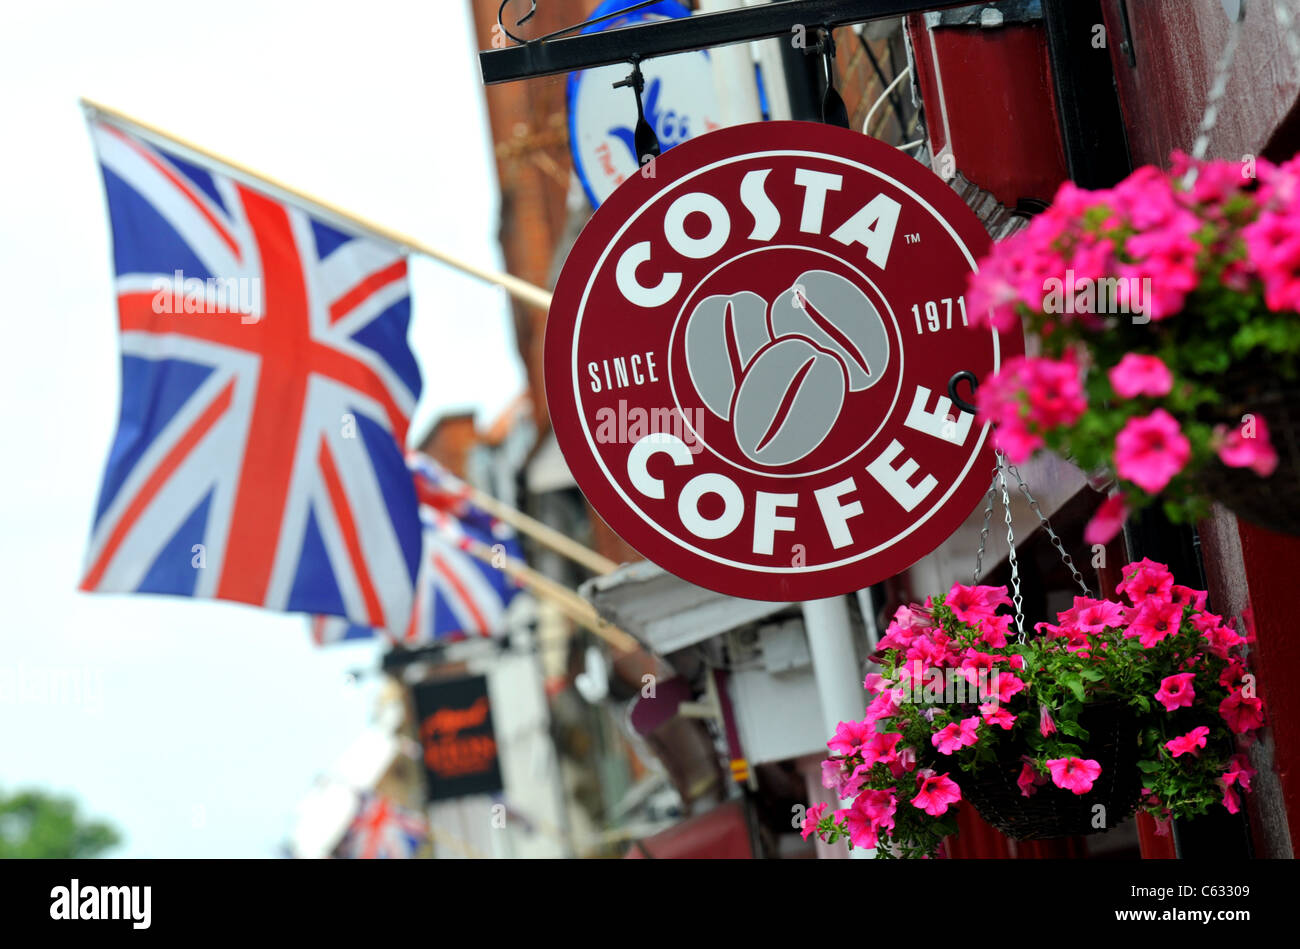 Costa Coffee, Eton, Windsor, Berkshire, Britain, UK Stock Photo